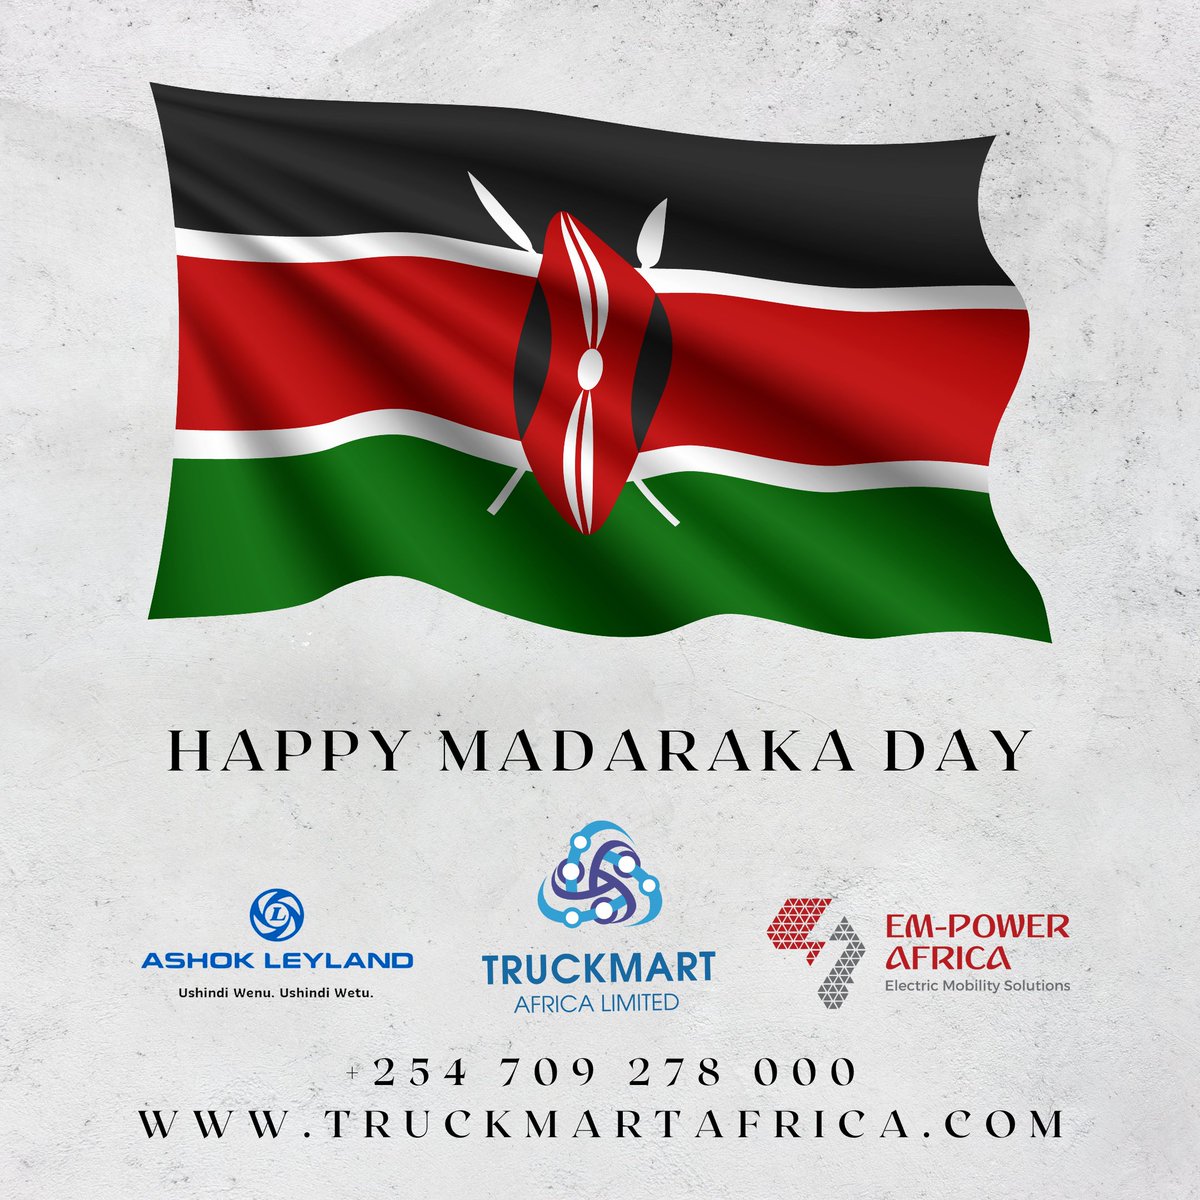 Truckmart wishes all Kenyans a Happy Madaraka Day!  

#Truckmart #AshokLeyland #EmPowerAfrica #Nairobi #Kenya #MadarakaDay